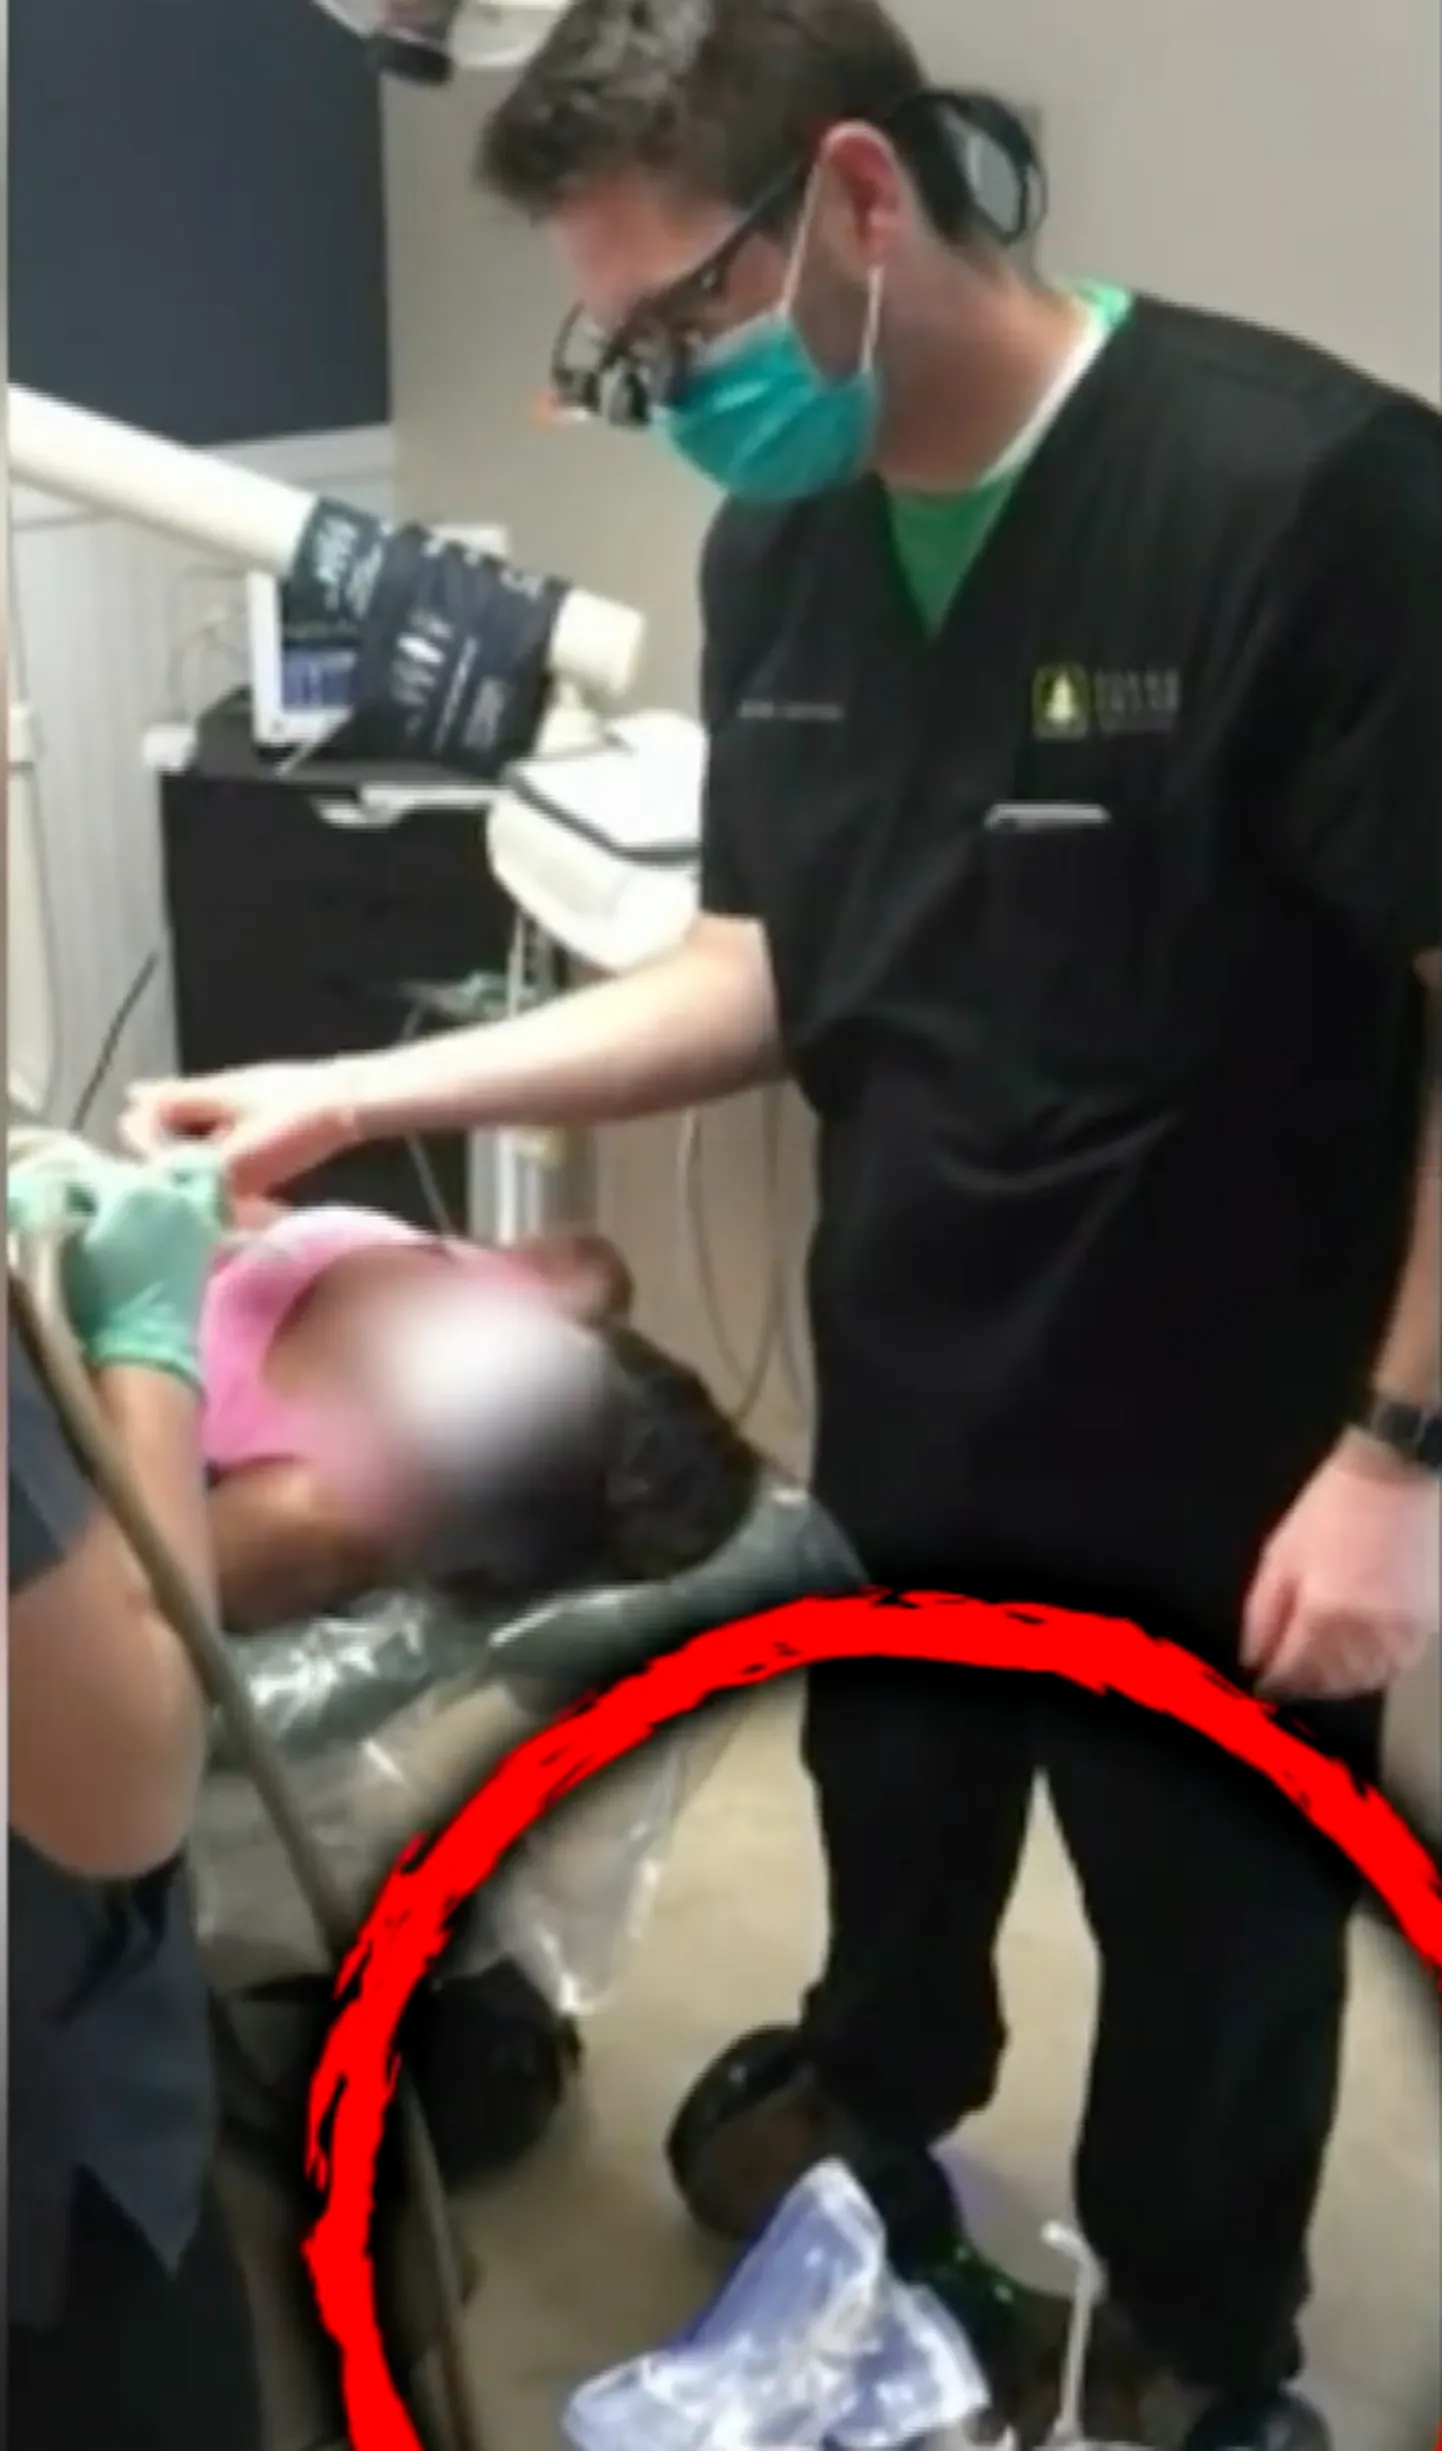 Endine hambaarst Seth Lockhart jäi politseile silma pärast seda, kui selgus, et ta tõmbas patsiendil hamba välja tasakaaluliikuril seistes ja seda kõike filmides.